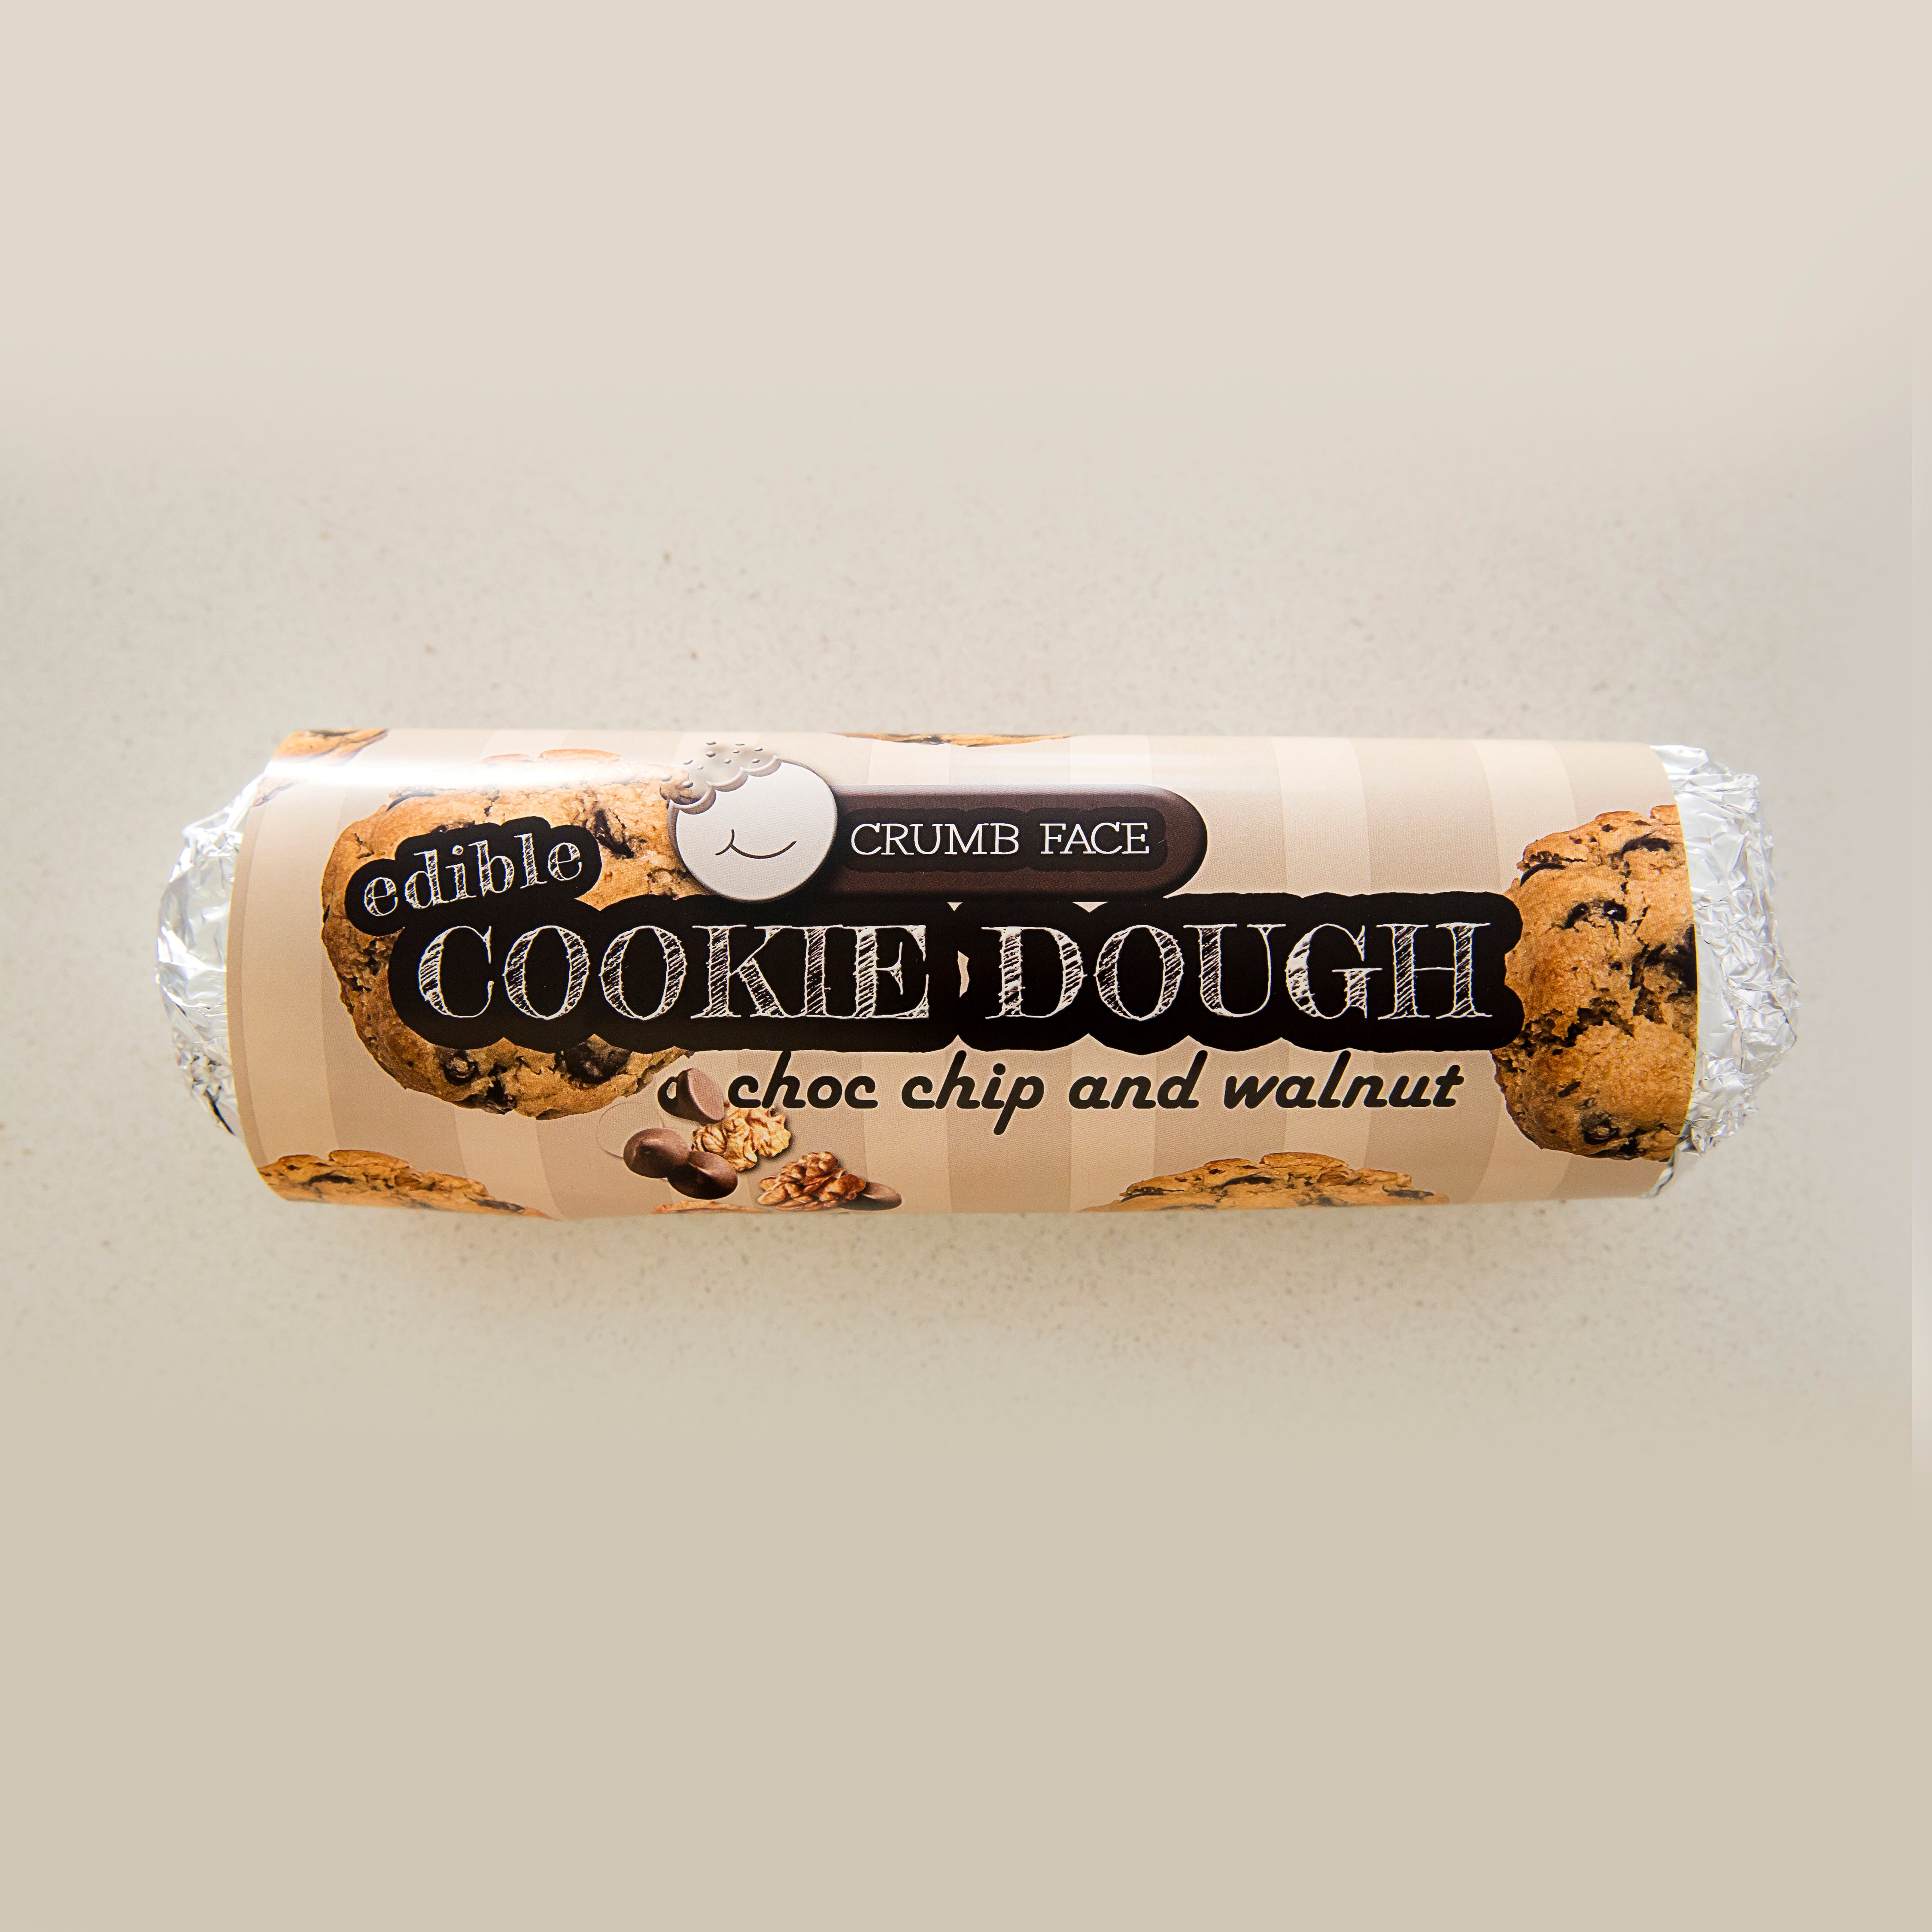 Edible Cookie Dough Log